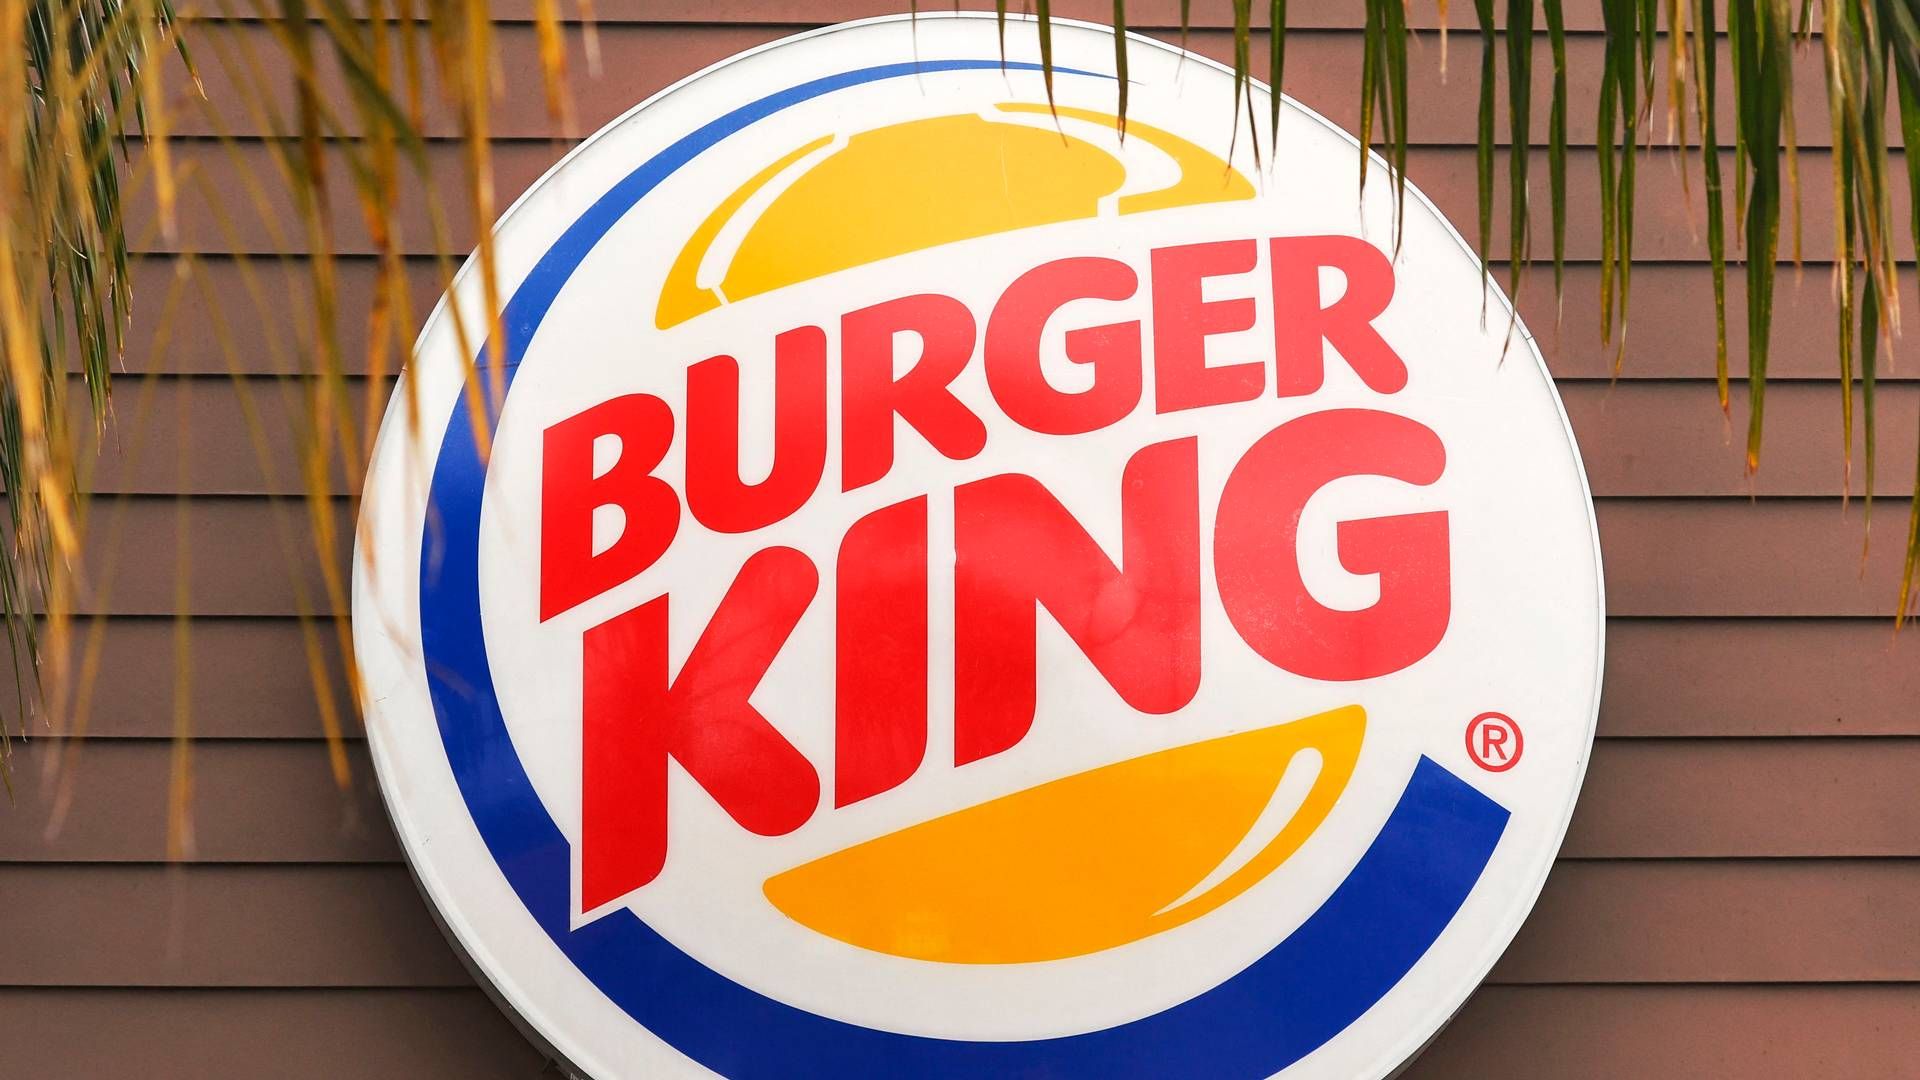 ”Vi har et produkt, som vi er meget, meget tilfredse med. Men som jeg også ærligt vil sige, at vi skal være bedre til at kommunikere ud omkring,” siger Carsten Lambrecht, direktør for Burger King i Danmark og Sverige. | Foto: Mario Tama/AFP/Ritzau Scanpix